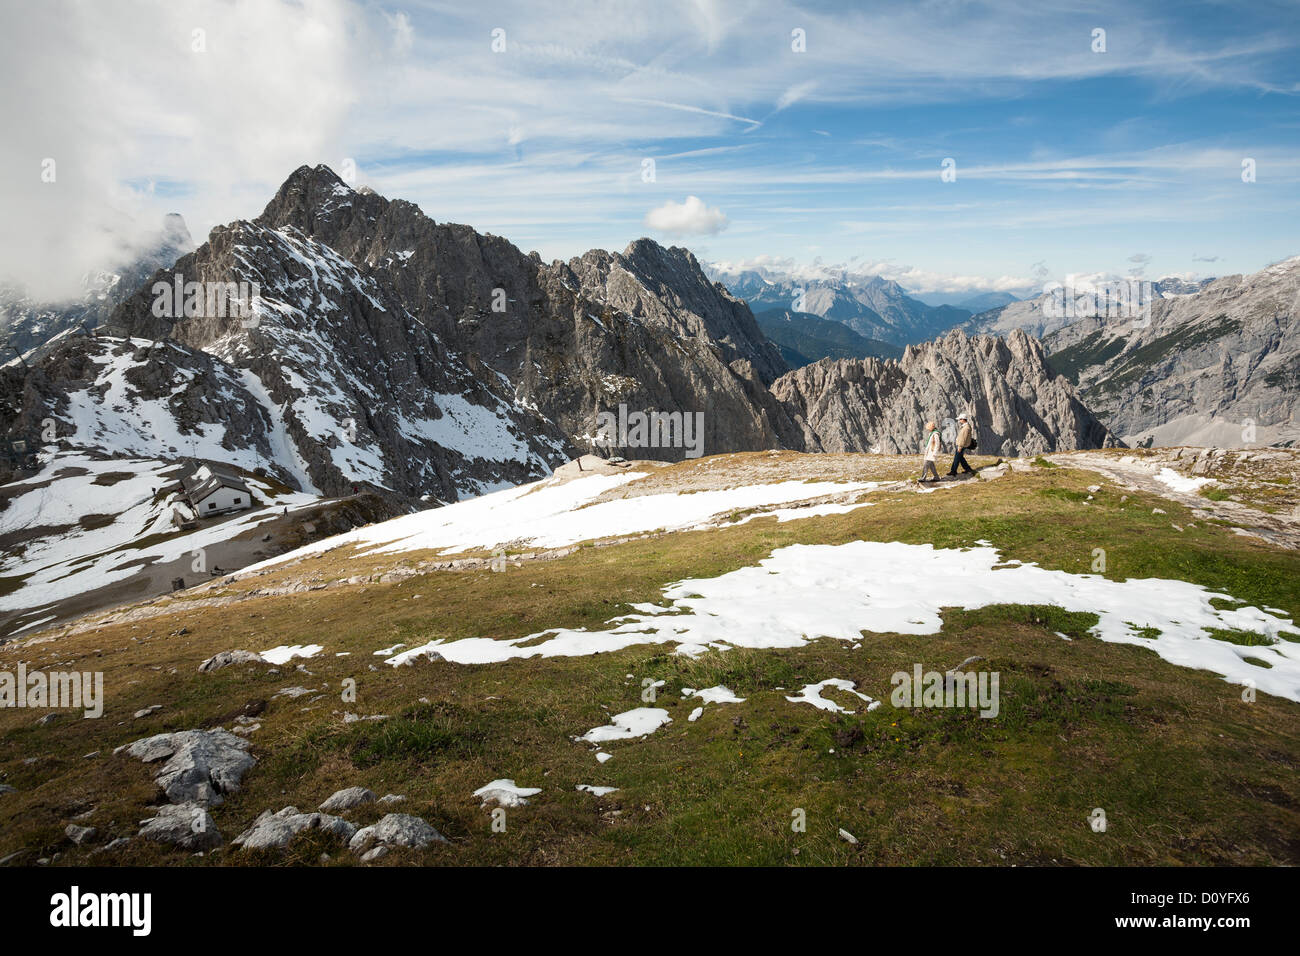 Pareja de turistas camina a través de la meseta de hierba con luz de nieve en los Alpes austríacos por encima de Innsbruck, con altos picos montañosos. Foto de stock